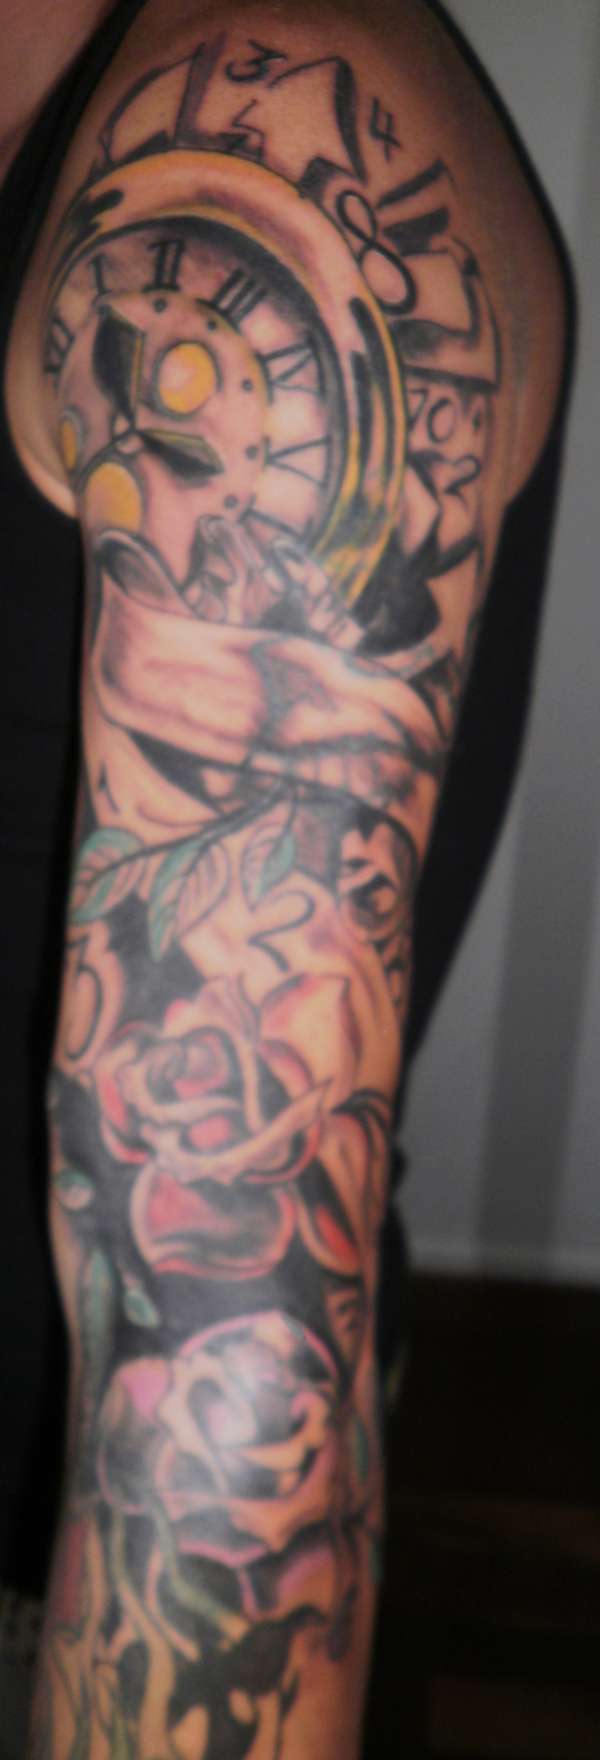 tattoo sleeve full pic part1 tattoo